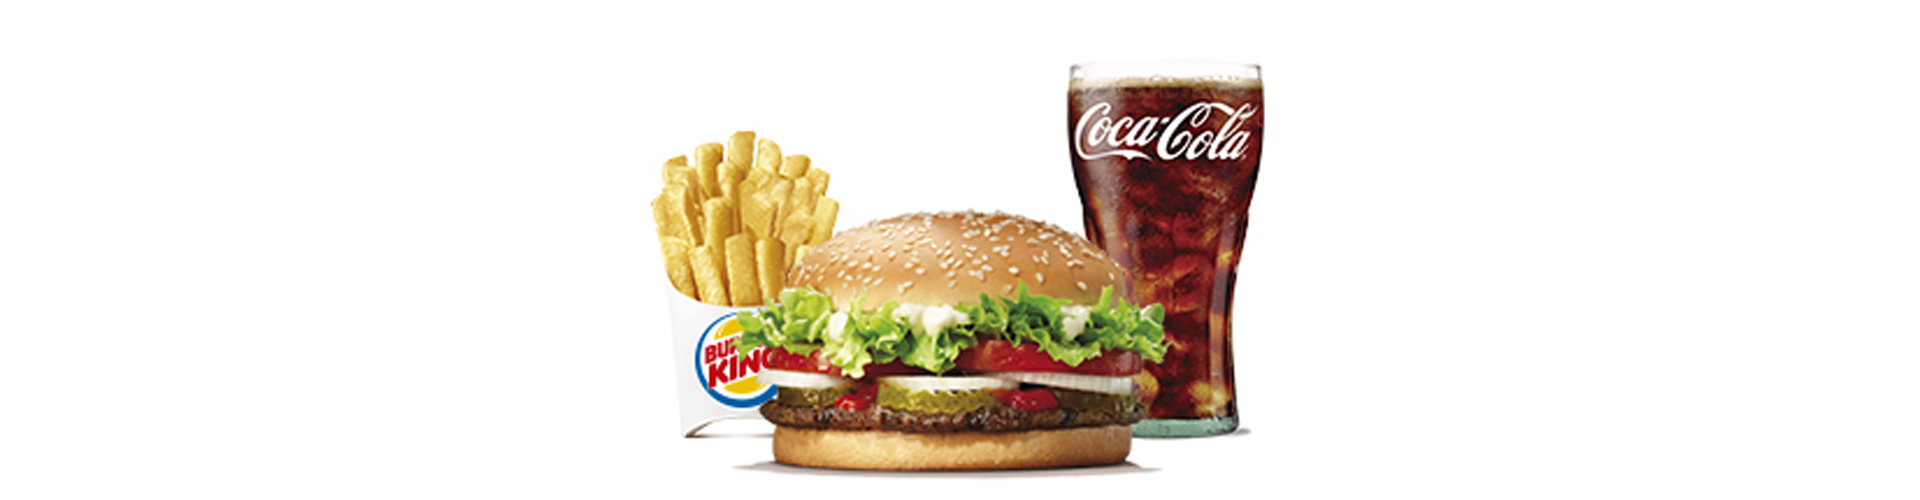 burgerking-40001707-agua-ensalada